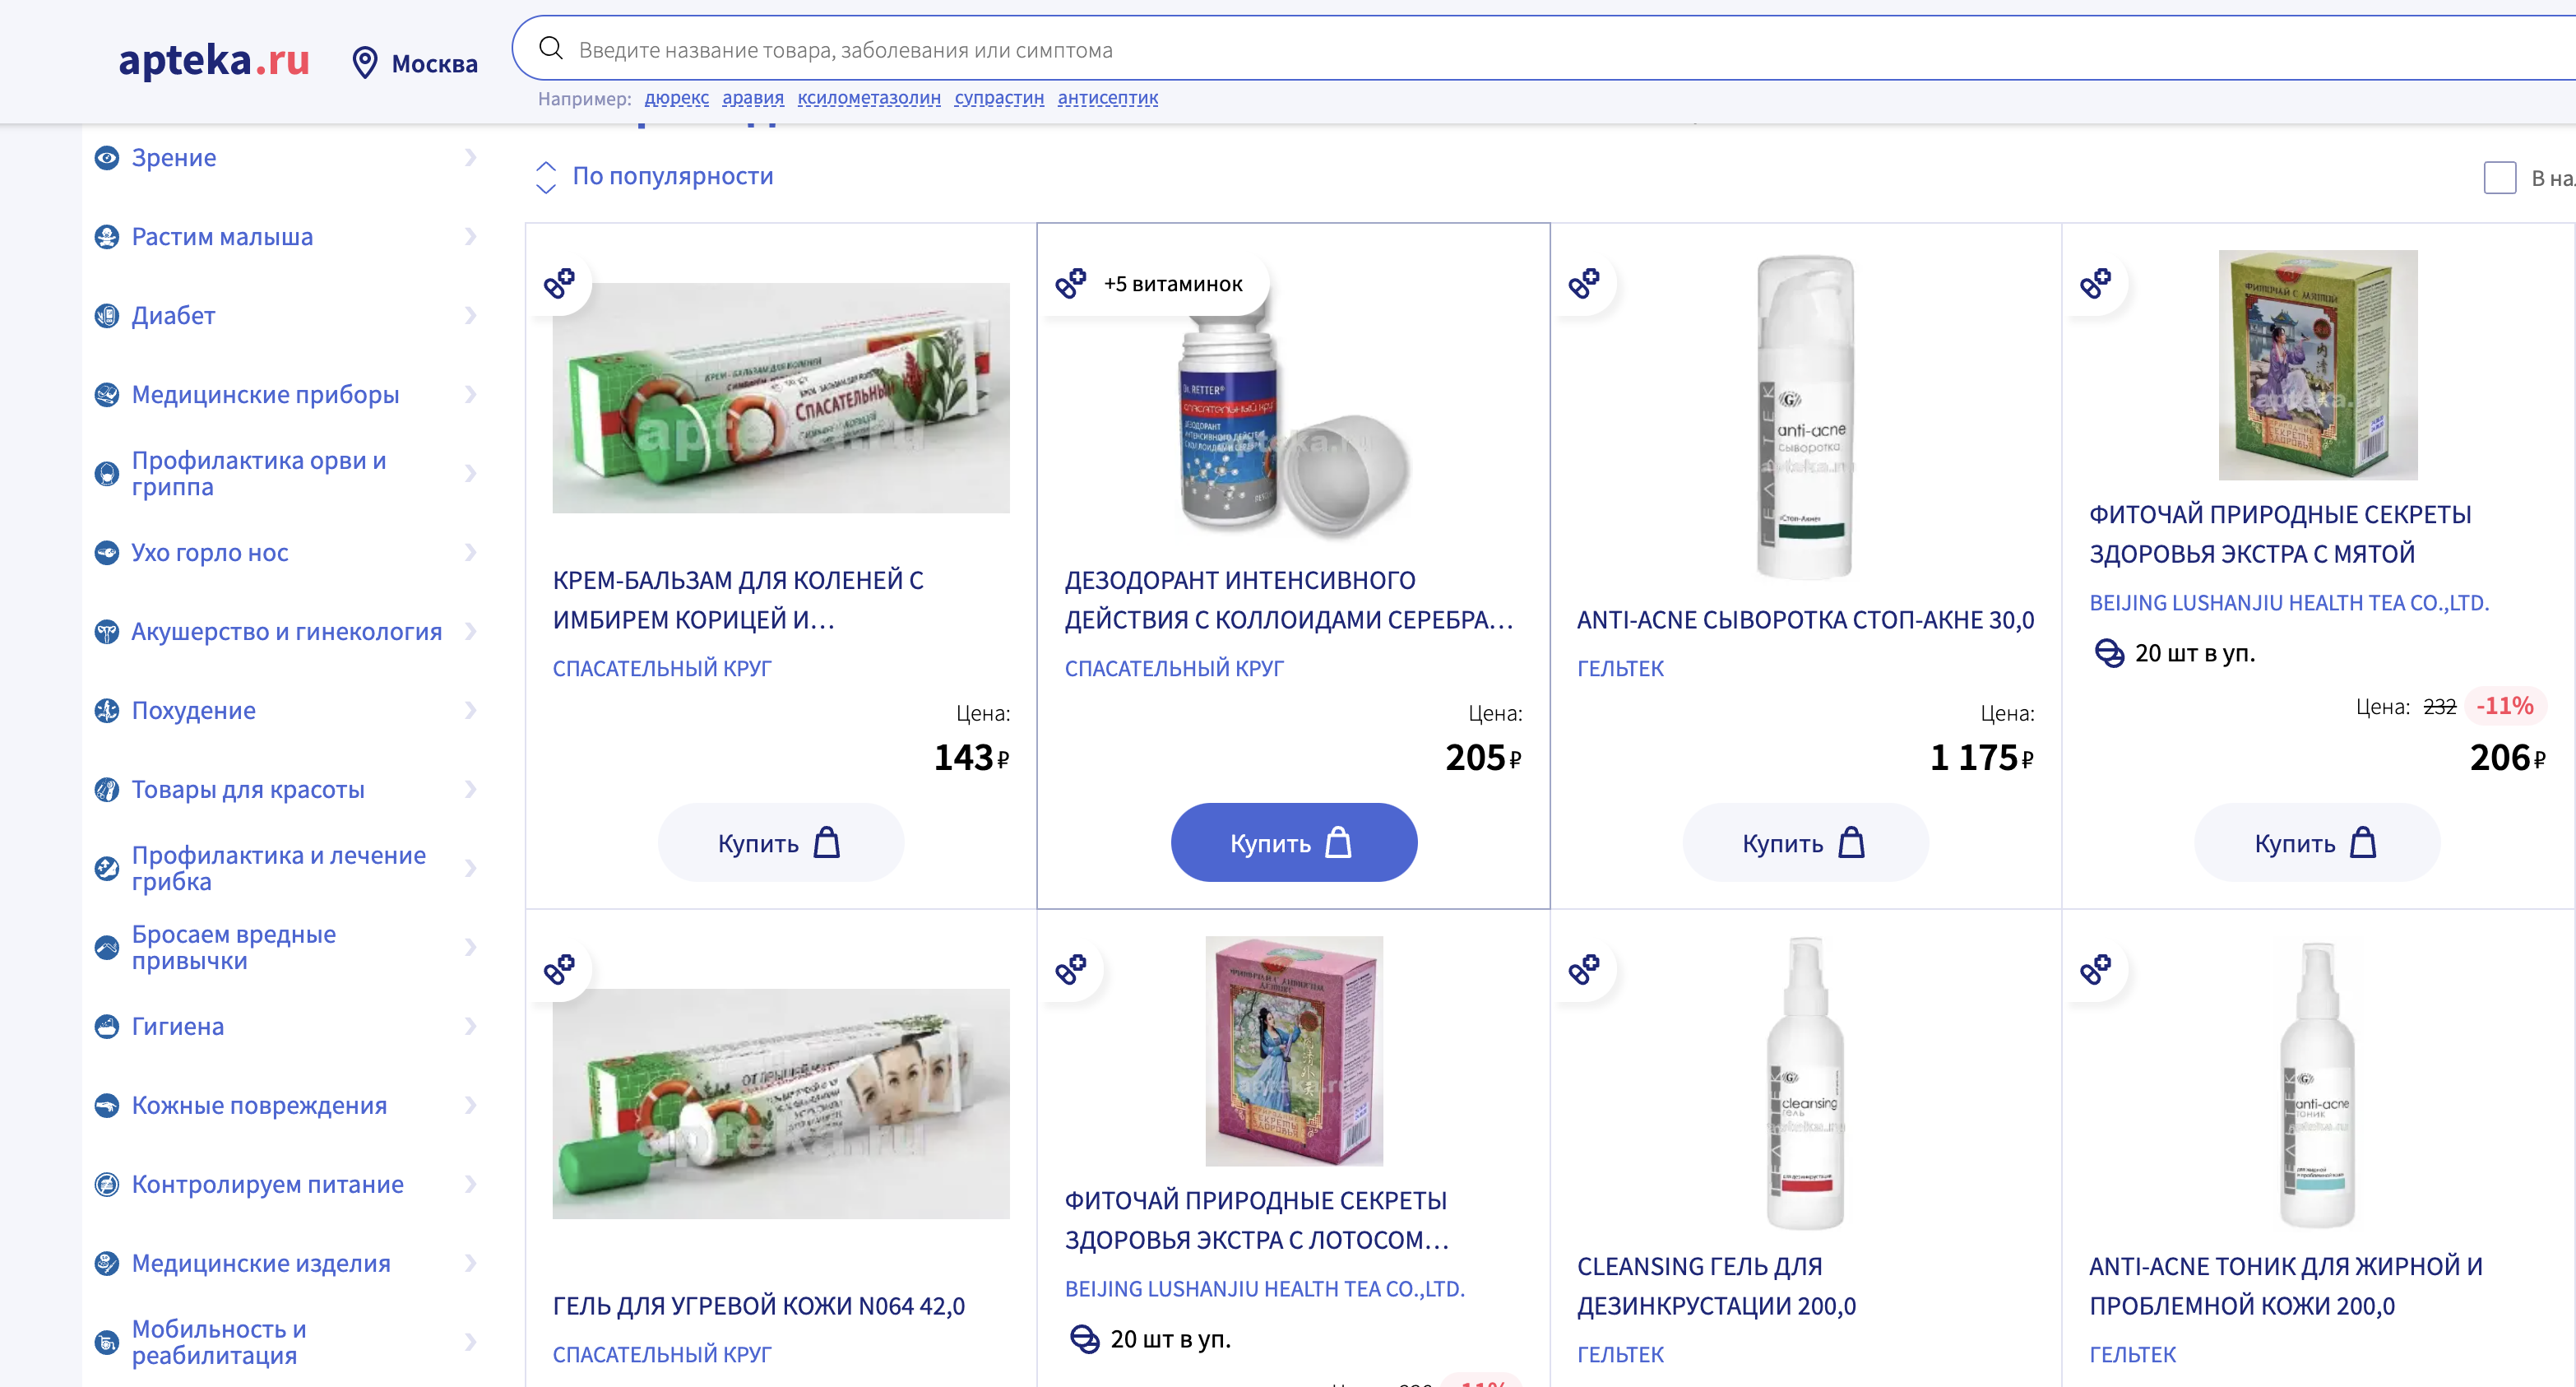 Как списать витаминки, полученные в онлайн аптеке Apteka.ru